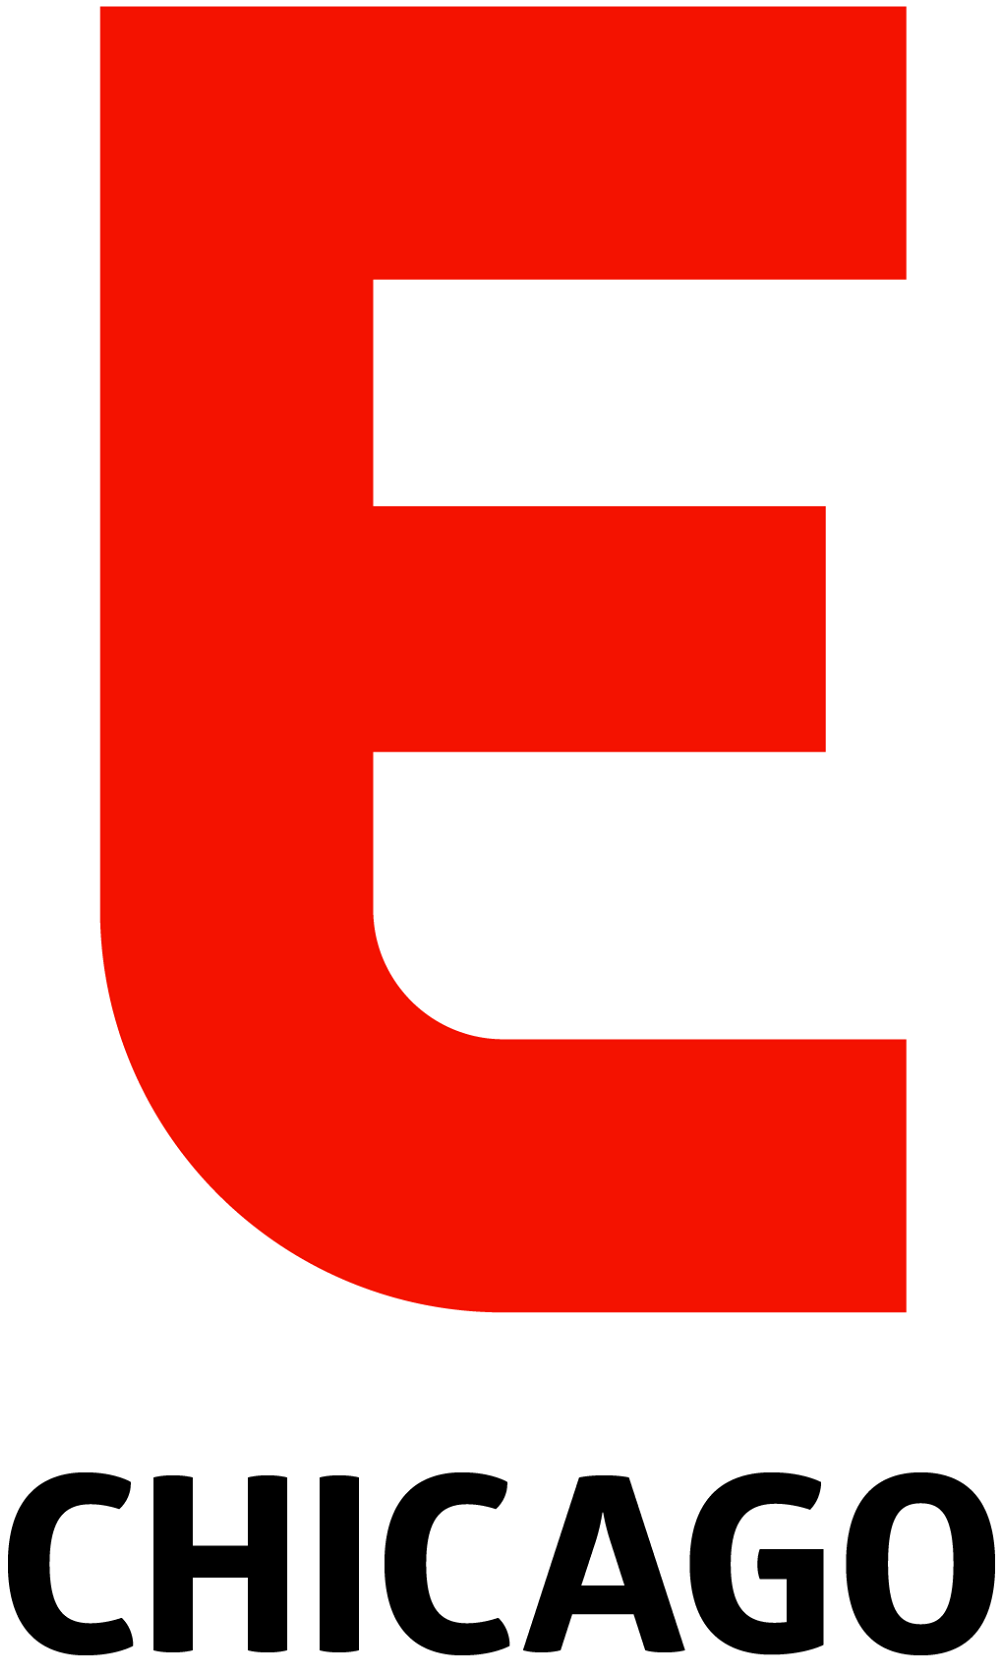 eater-logo